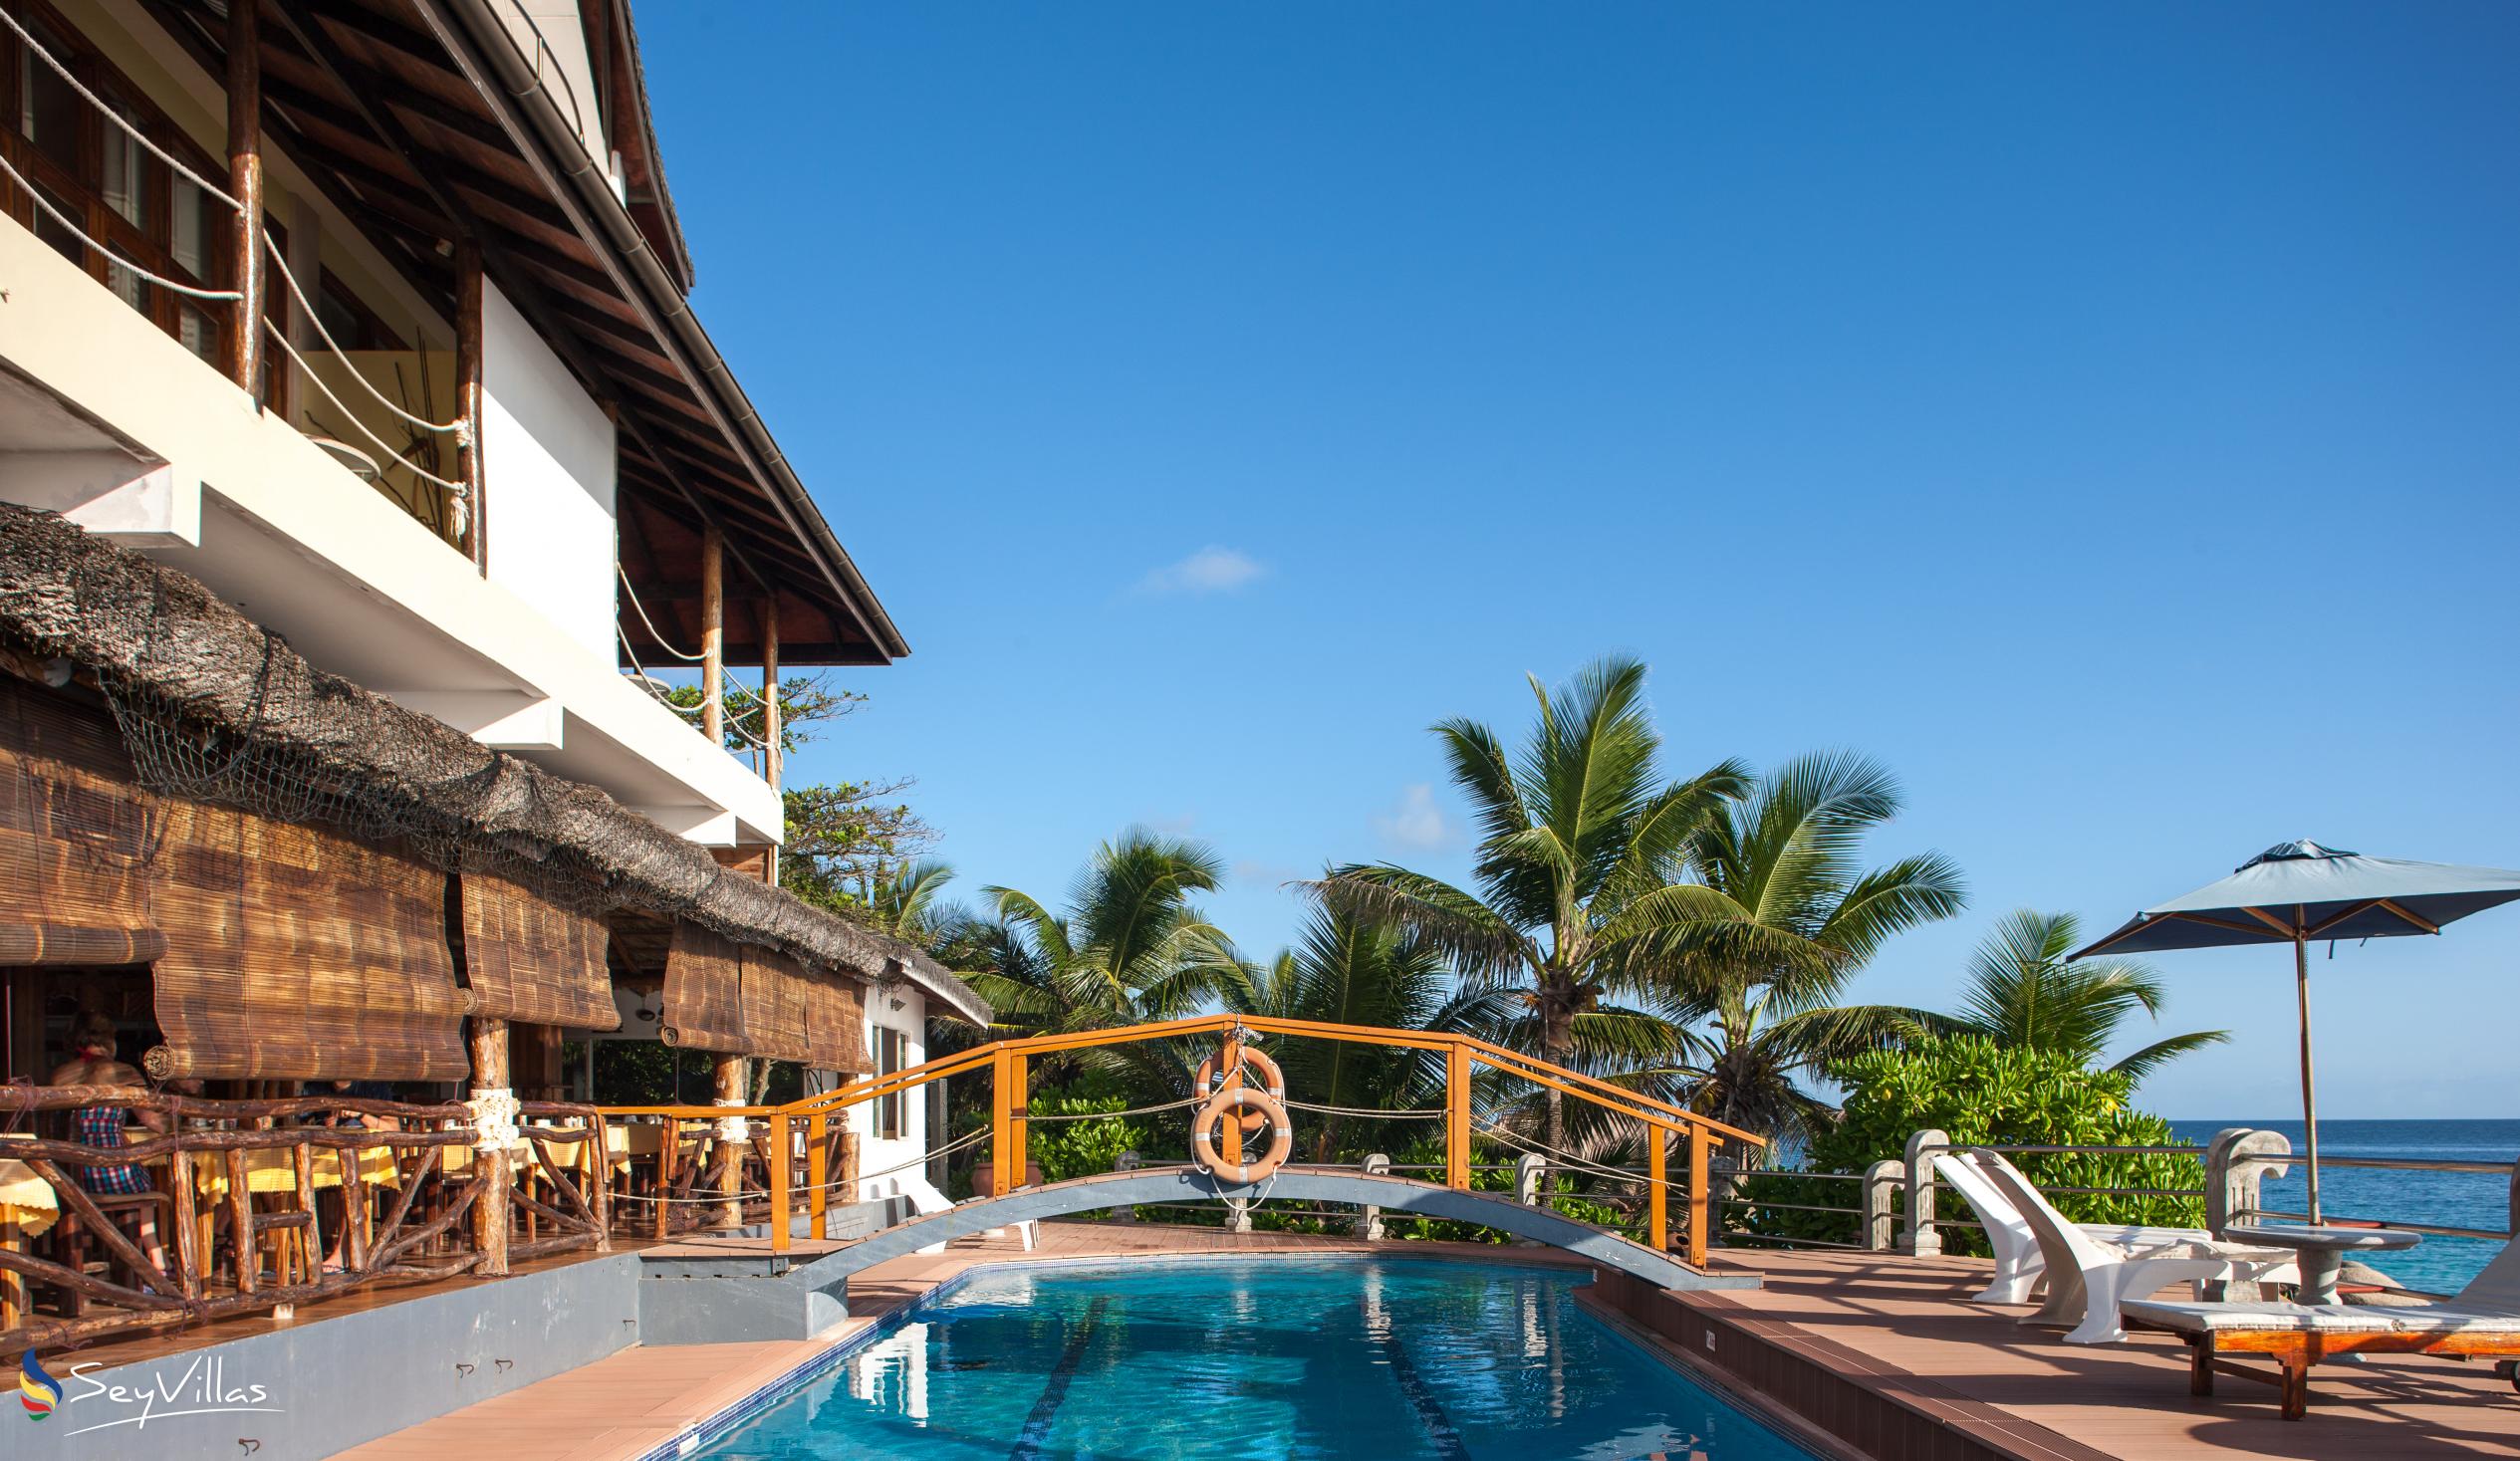 Foto 5: Patatran Village Hotel - Aussenbereich - La Digue (Seychellen)